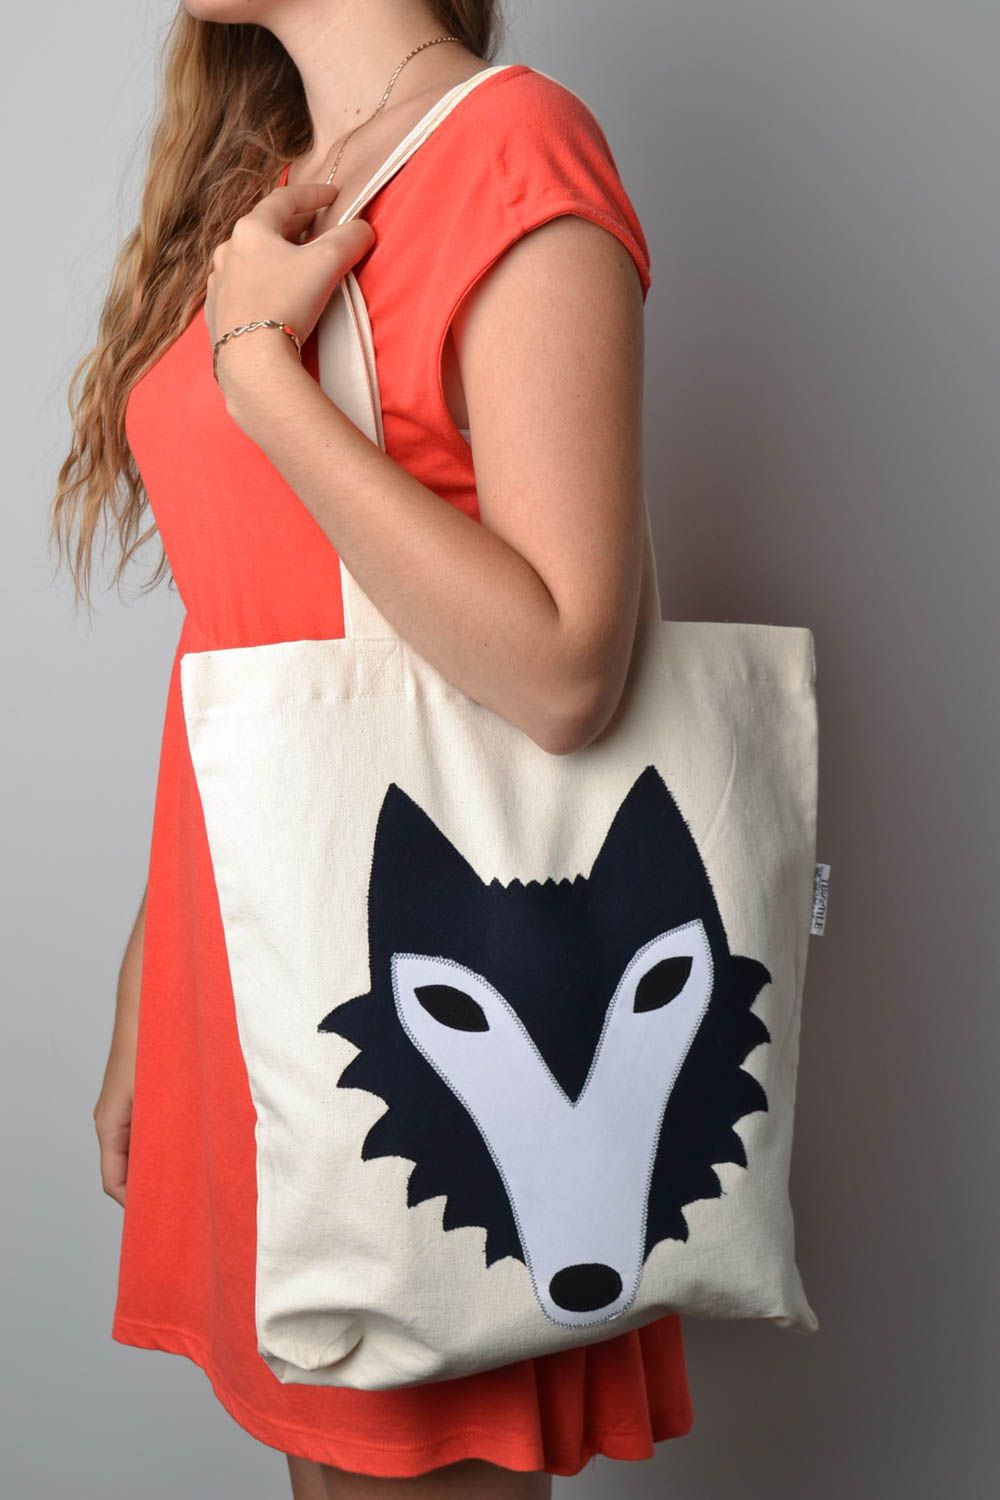 Handmade bag designer beg unusual gift for girl bag for women casual bag photo 1